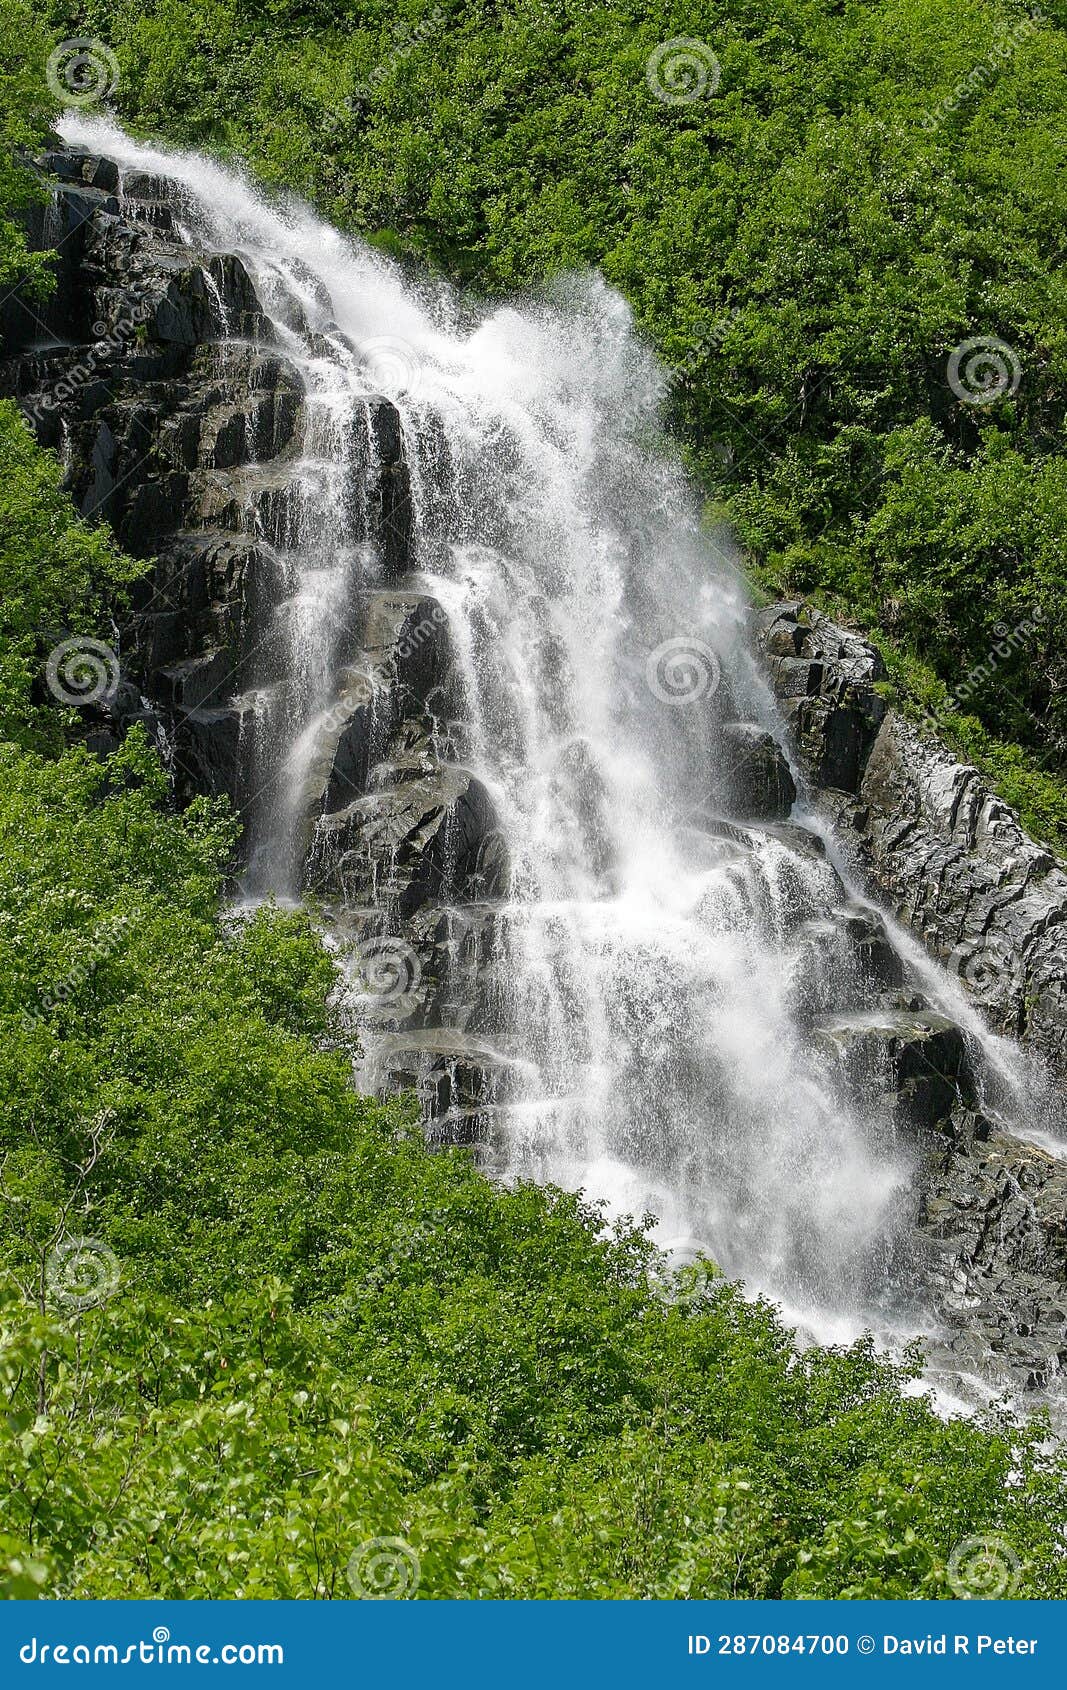 valdez alaska spring mountain waterfall